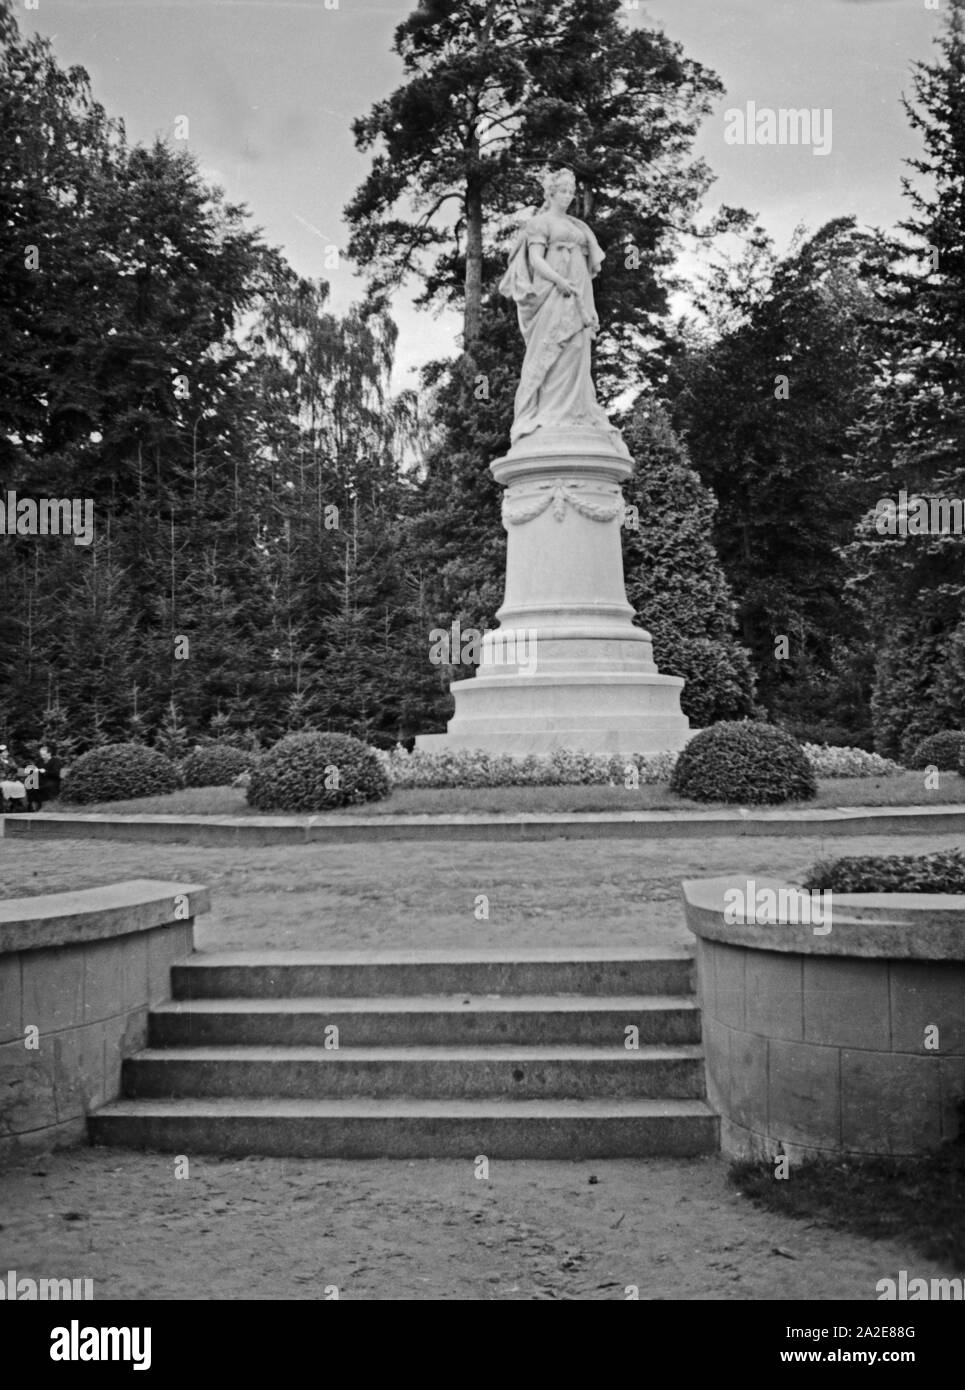 Königin Luise Das Denkmal à Tilsit, Ostpreußen, 1930er Jahre. La reine Louise Monument à Tilsit, en Prusse orientale, 1930. Banque D'Images